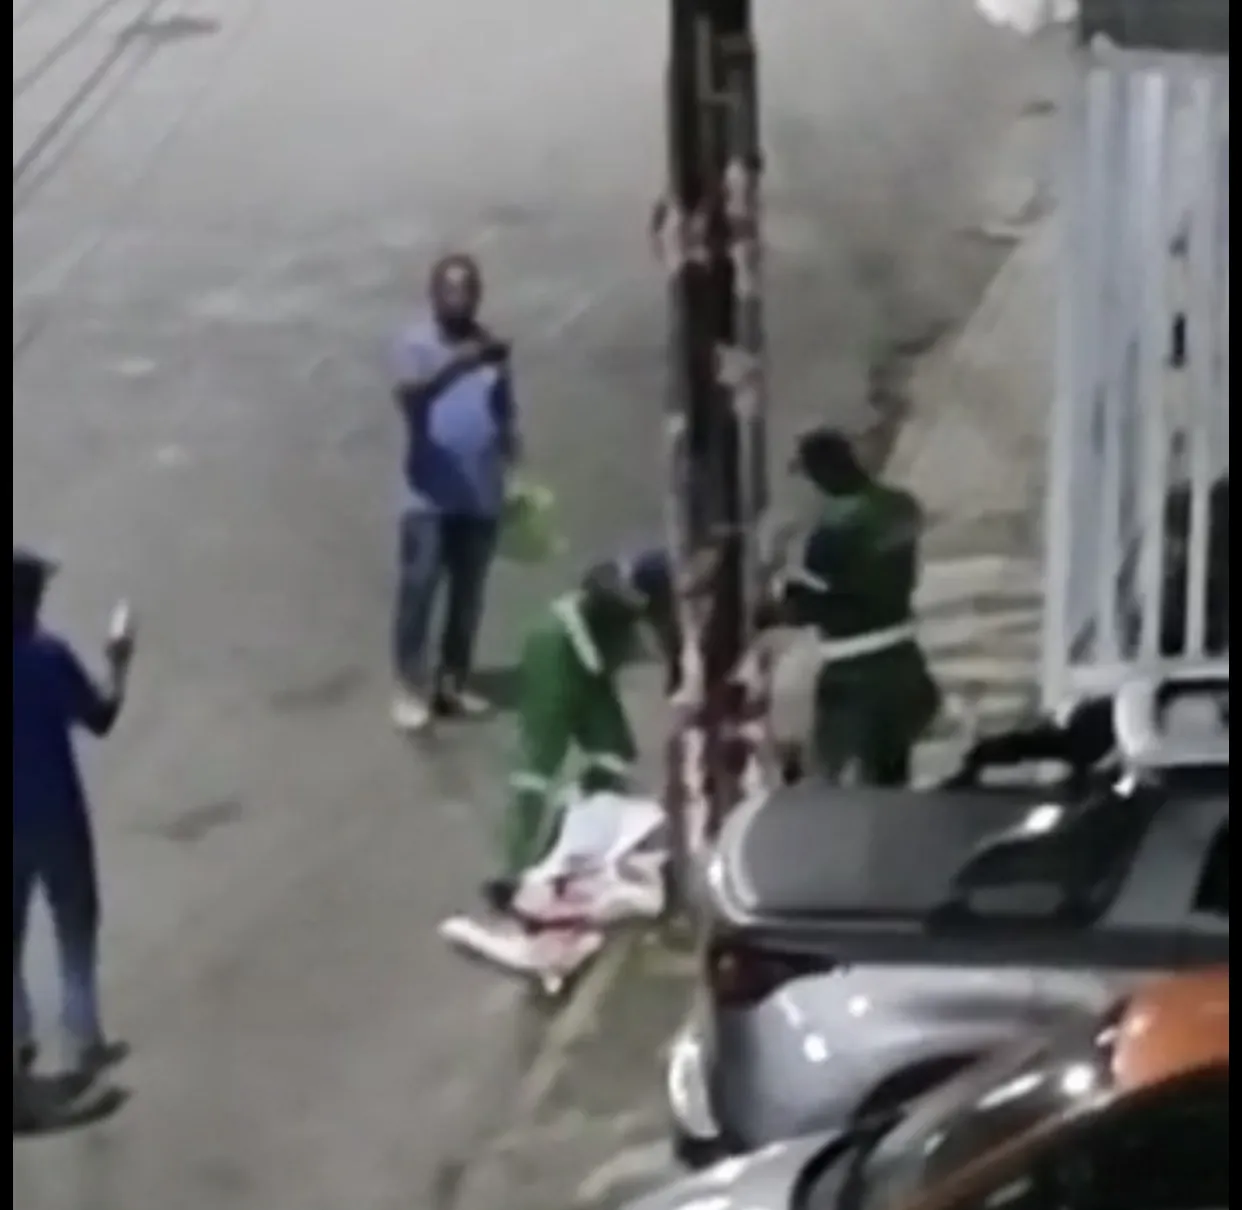 Vídeo registrou momento em que funcionários da limpeza urbana retiram material de campanha de postes de iluminação